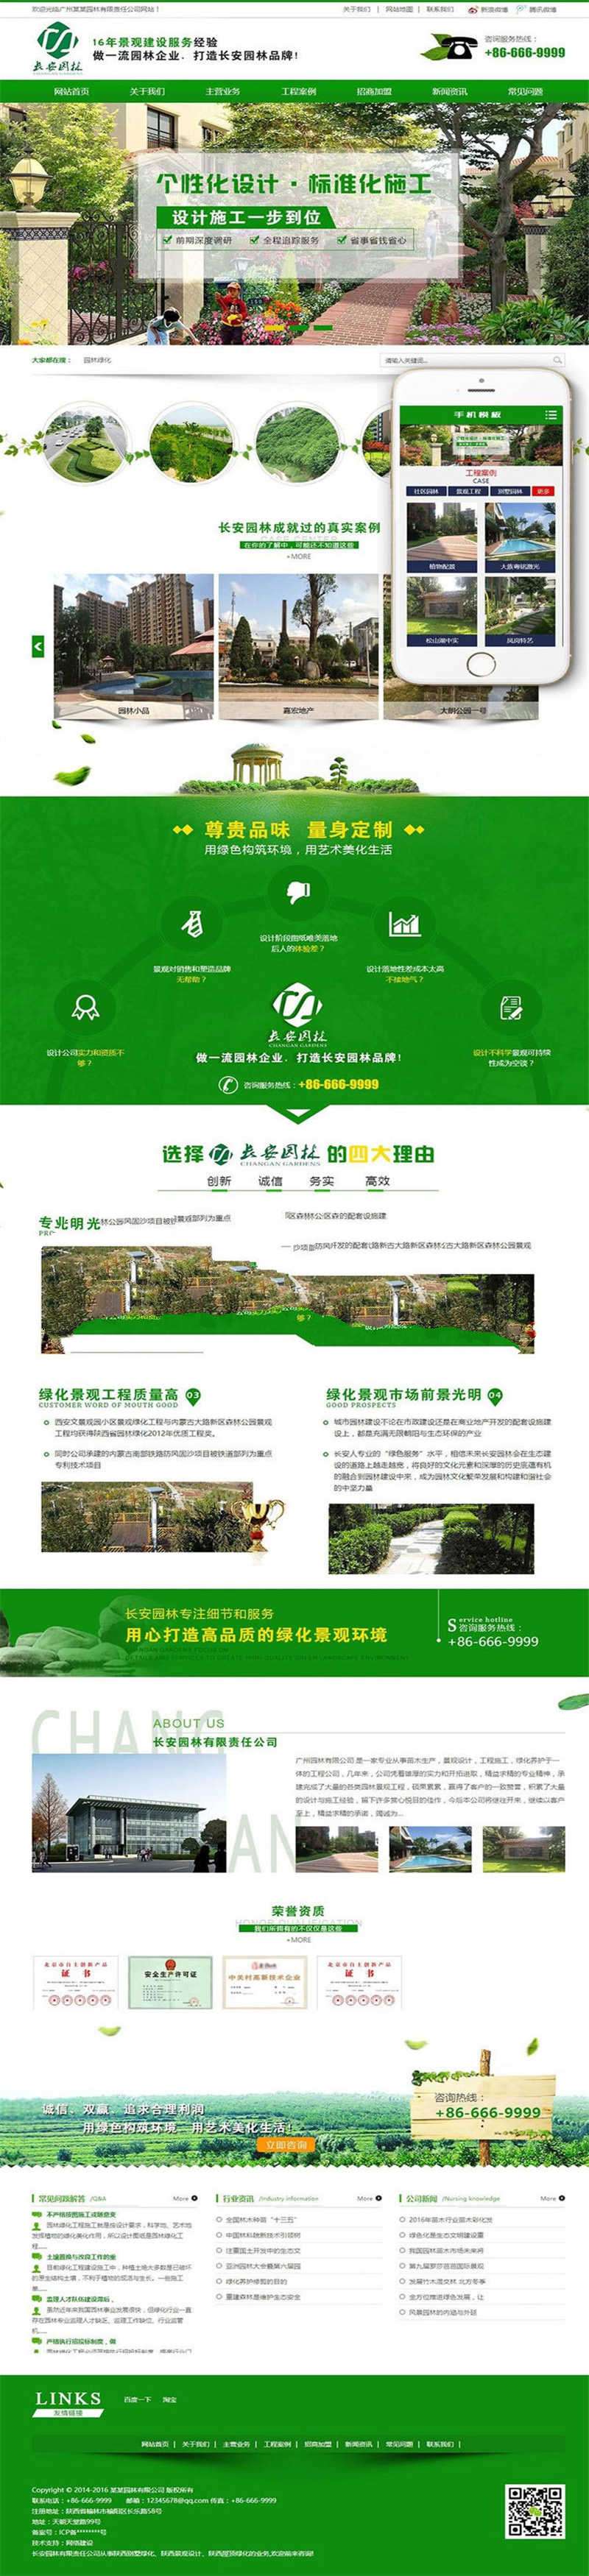 [企业源码]织梦dedecms营销型市政园林绿化企业网站模板(带手机移动端)插图